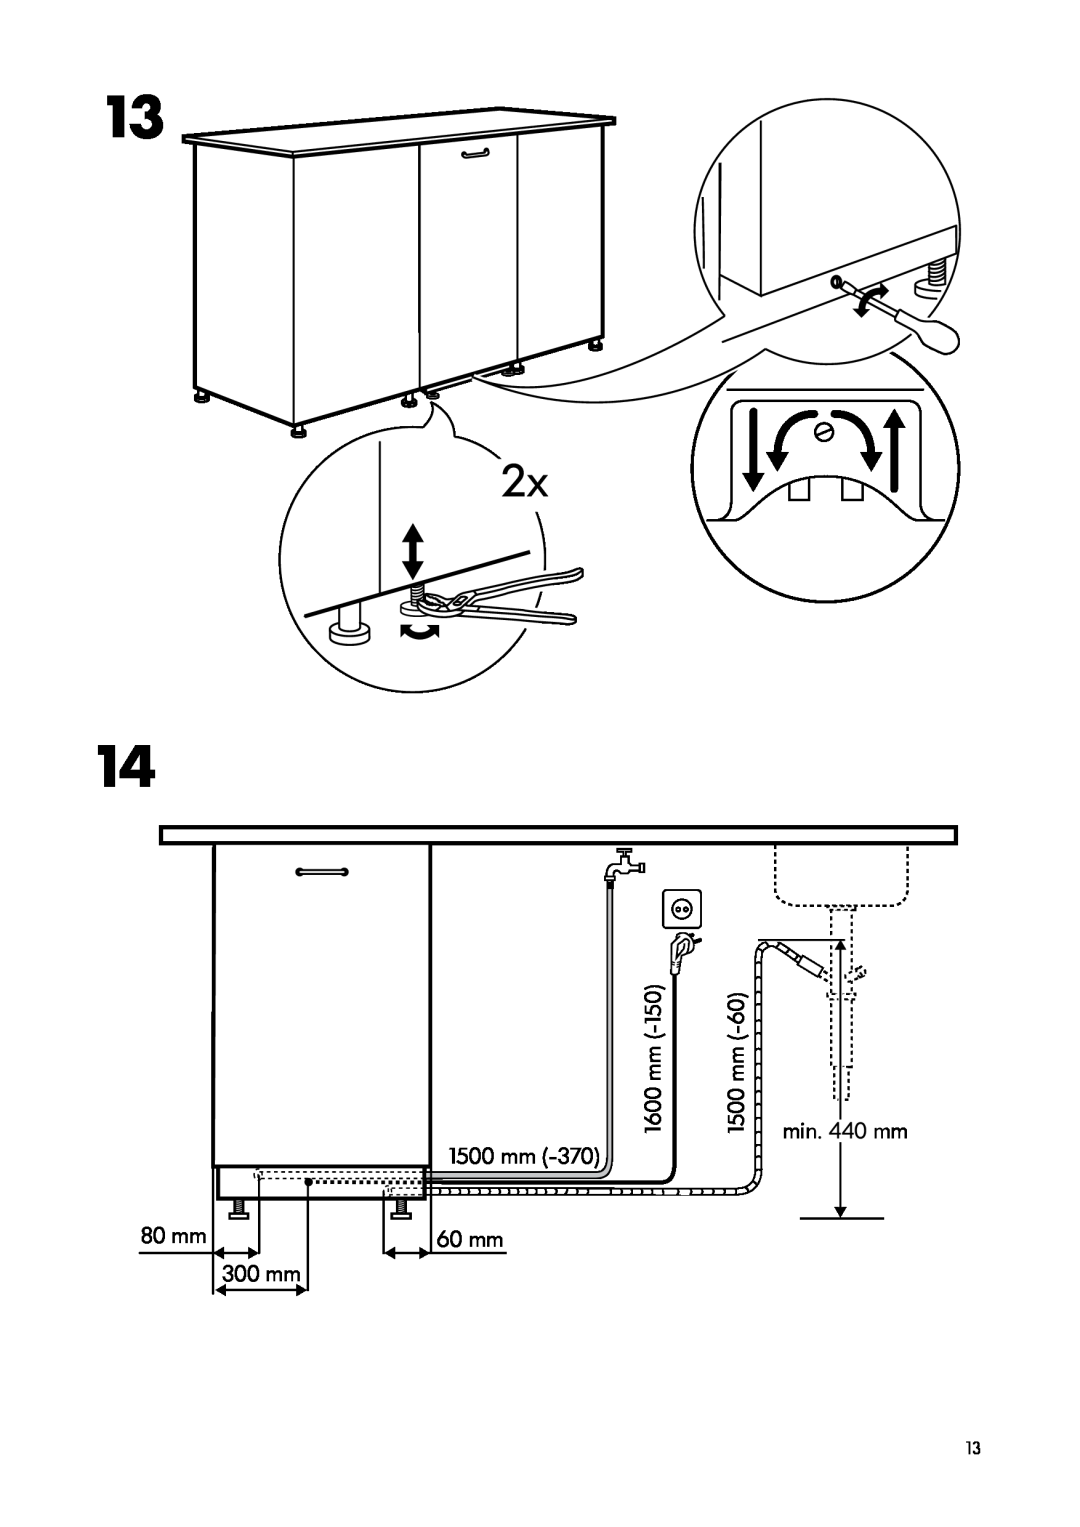 IKEA DW45 manual 80 mm 300 mm, 1500 mm 60 mm, min. 440 mm, 1600 mm 